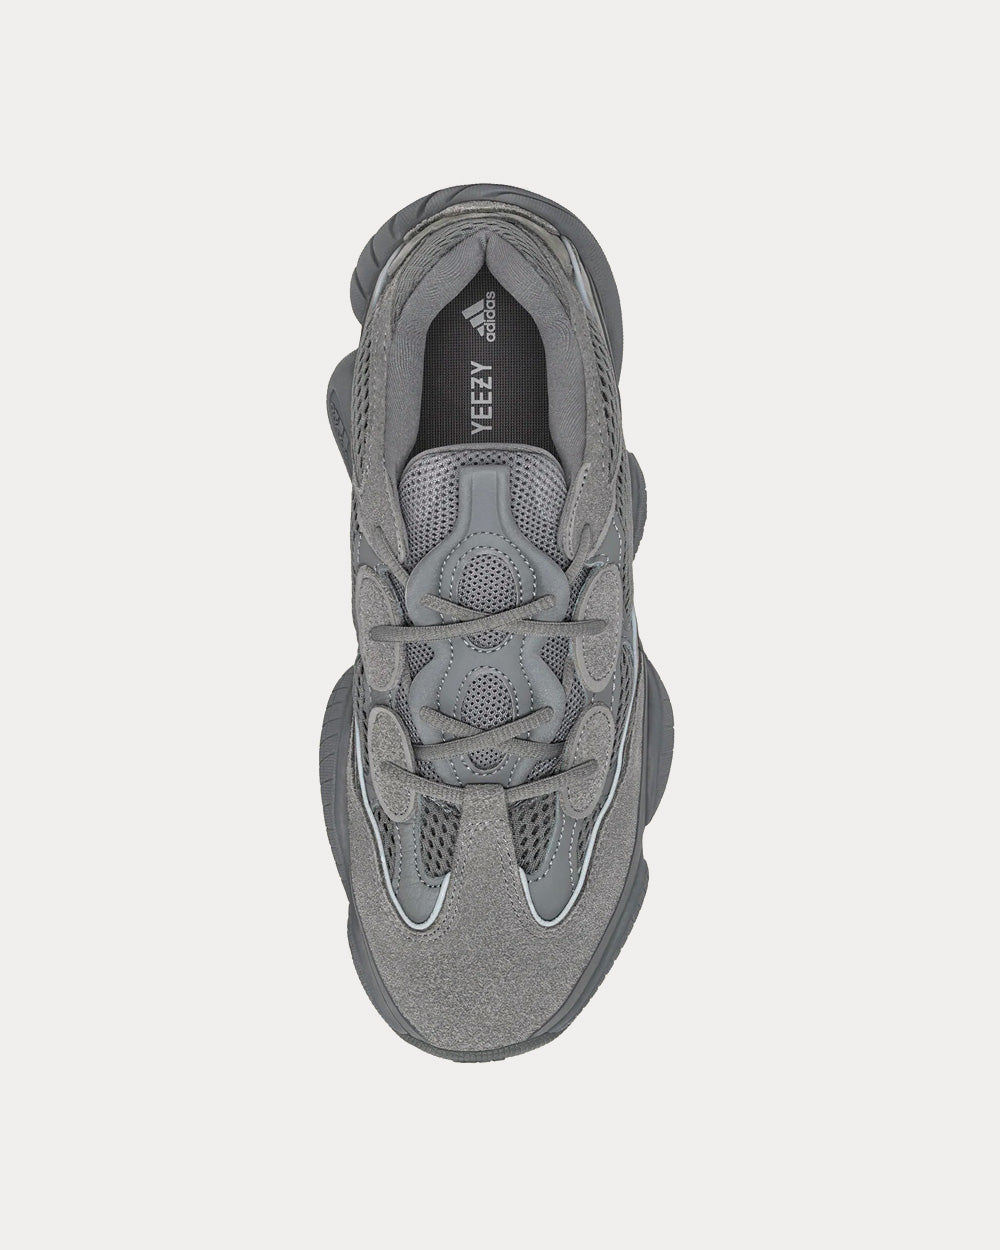 Yeezy 500 Granite Low Top Sneakers - Sneak in Peace